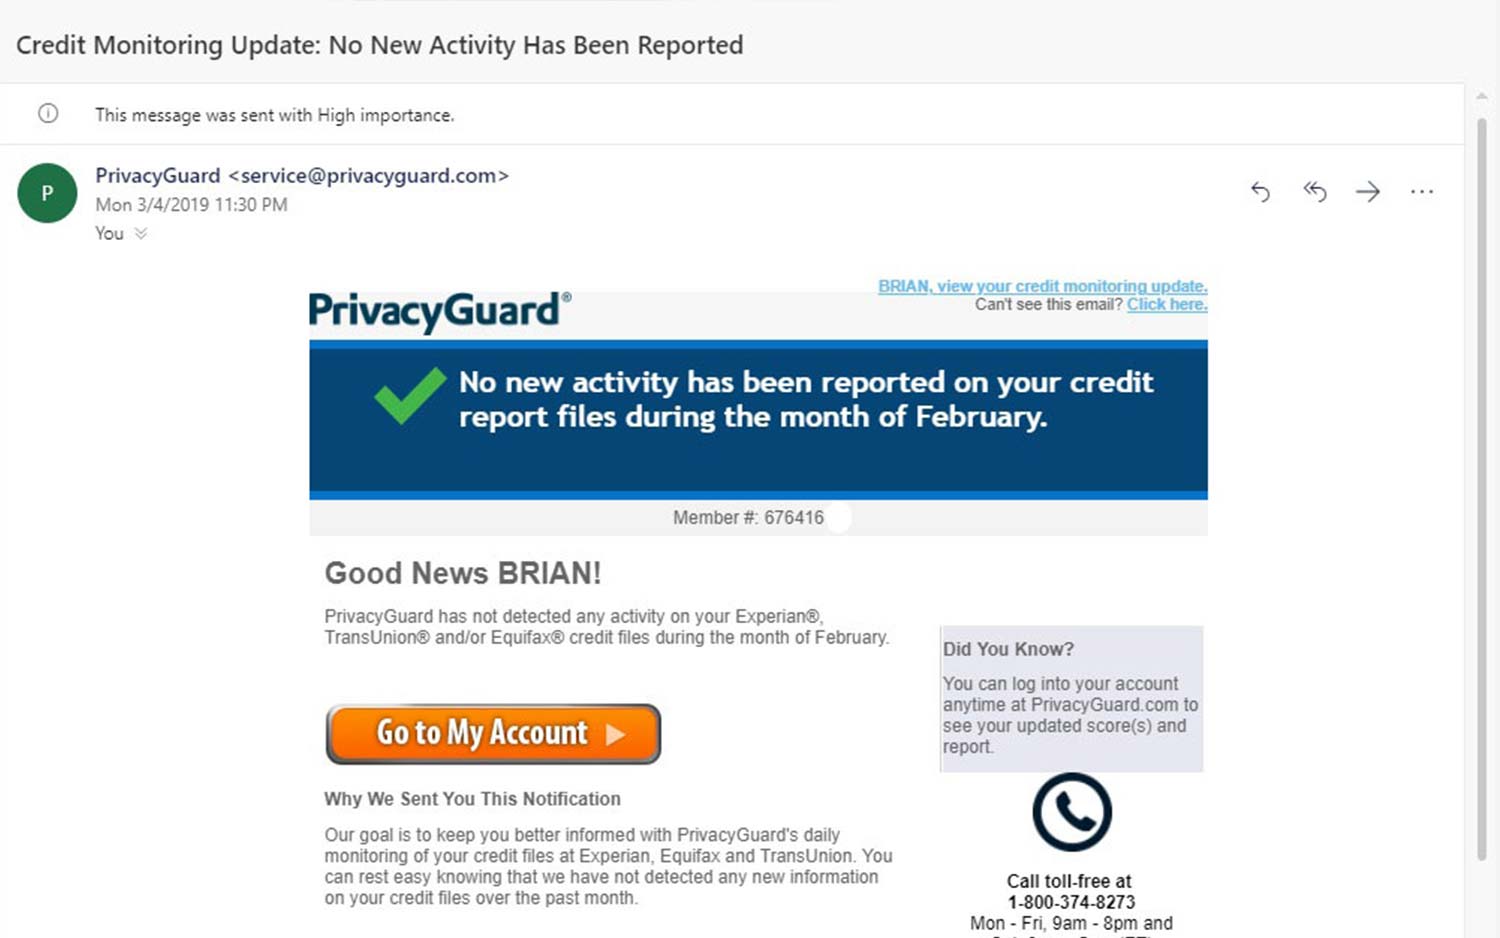 www privacy guard